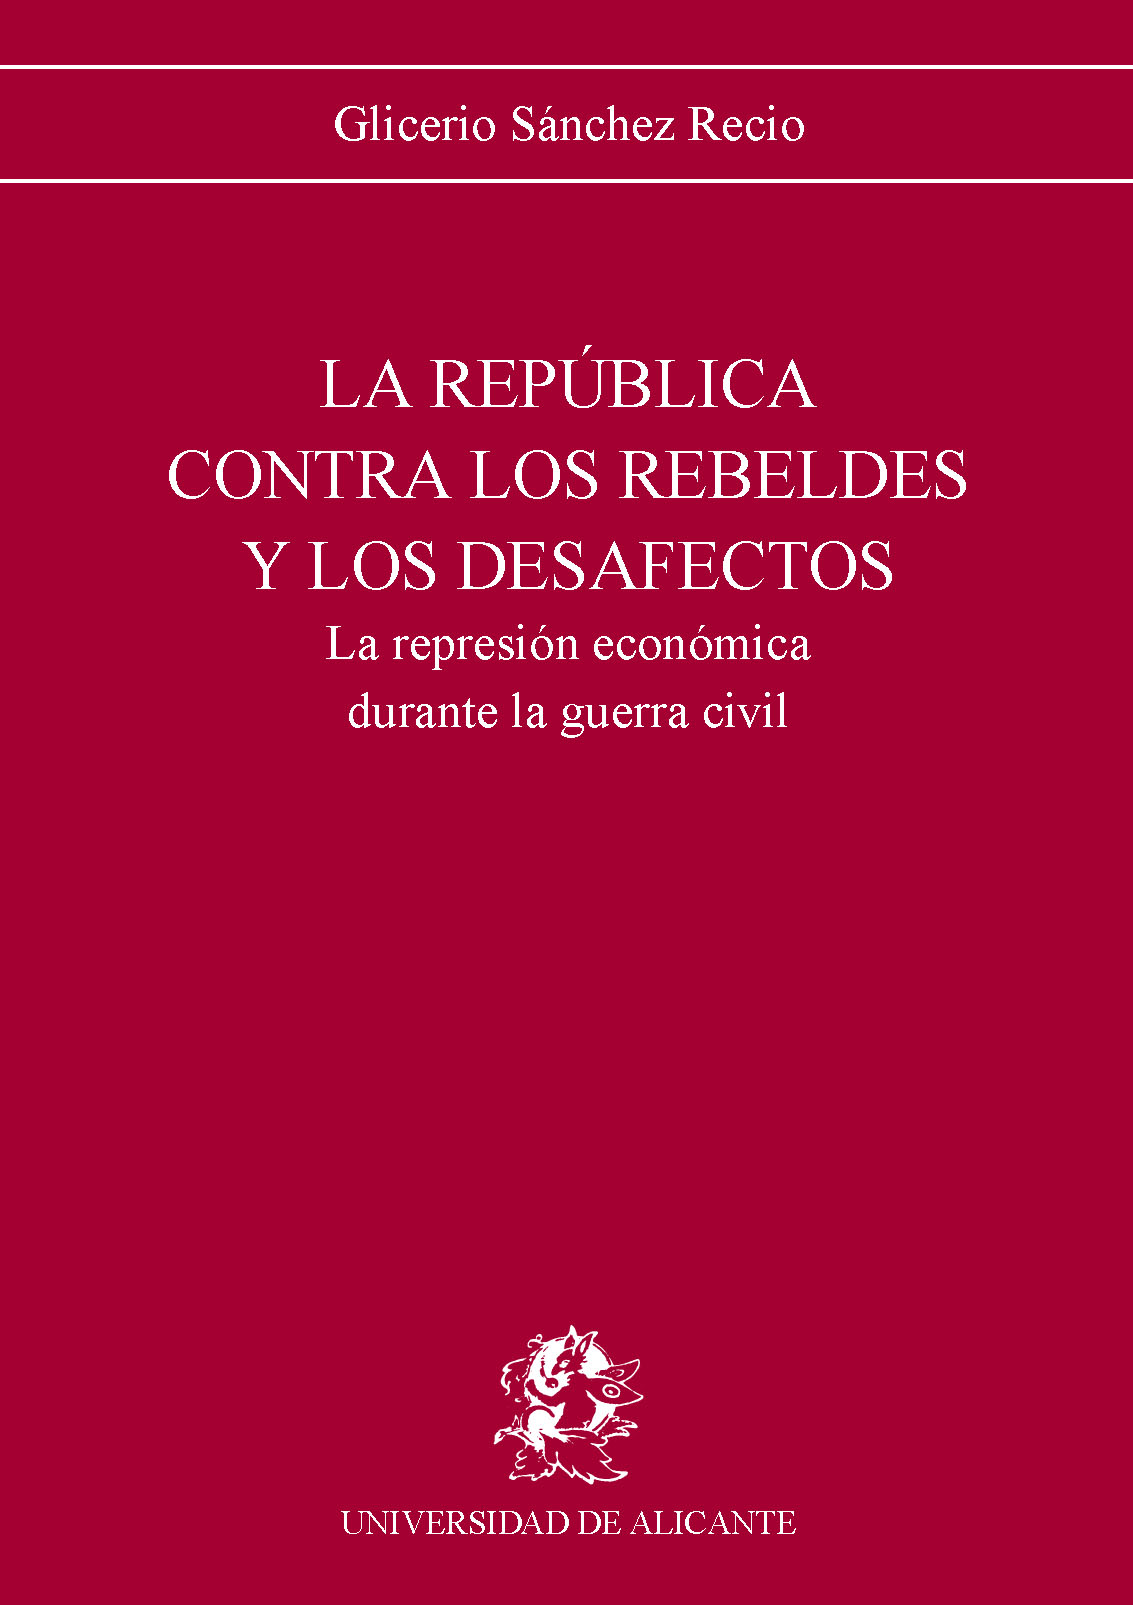 La RepÃºblica contra los rebeldes y desafectos